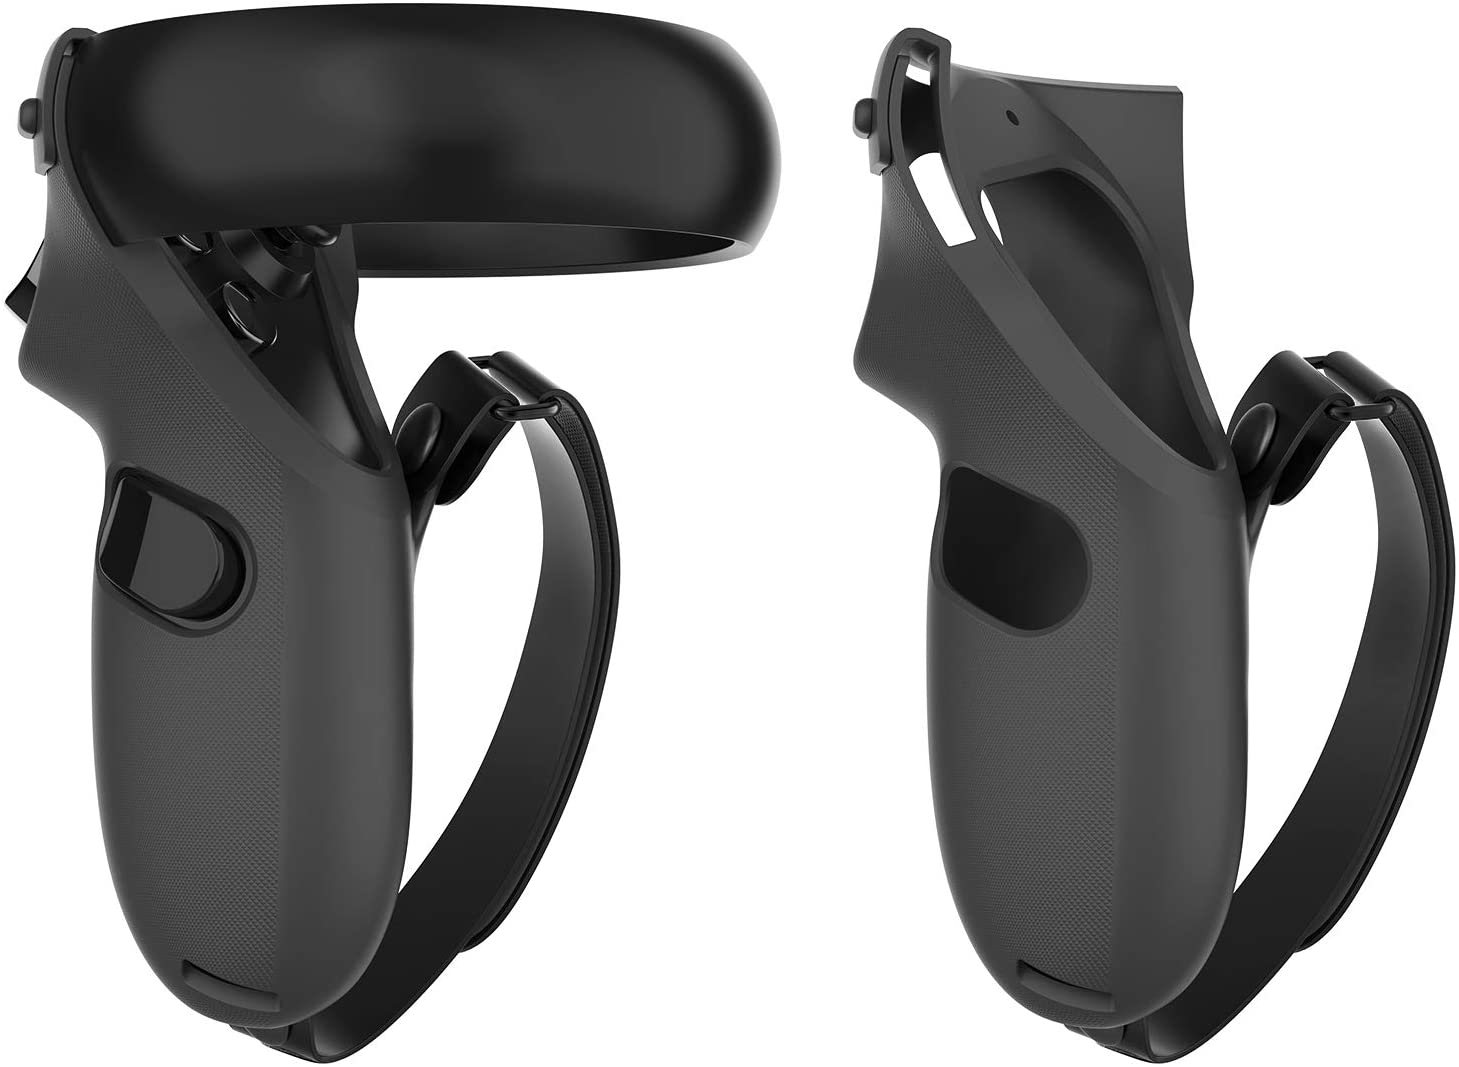 Kiwi Design Oculus Quest Grips Pro Version